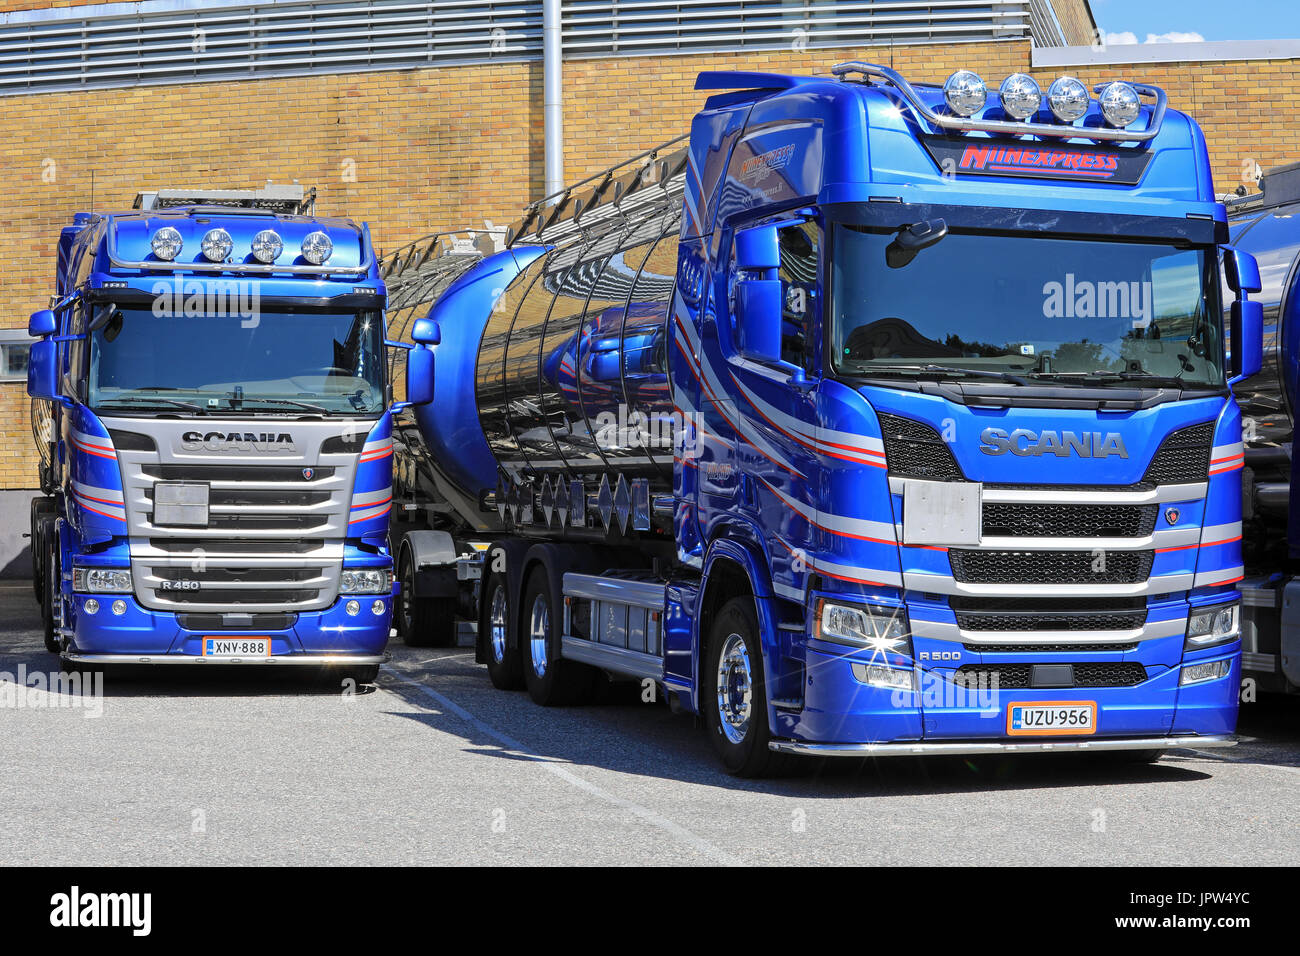 TURKU, Finlandia - 29 luglio 2017: Scania serie R camion cisterna di Niinexpress Oy parcheggiato su un cantiere, a destra la prossima generazione Scania R500, lasciato il precedente m Foto Stock